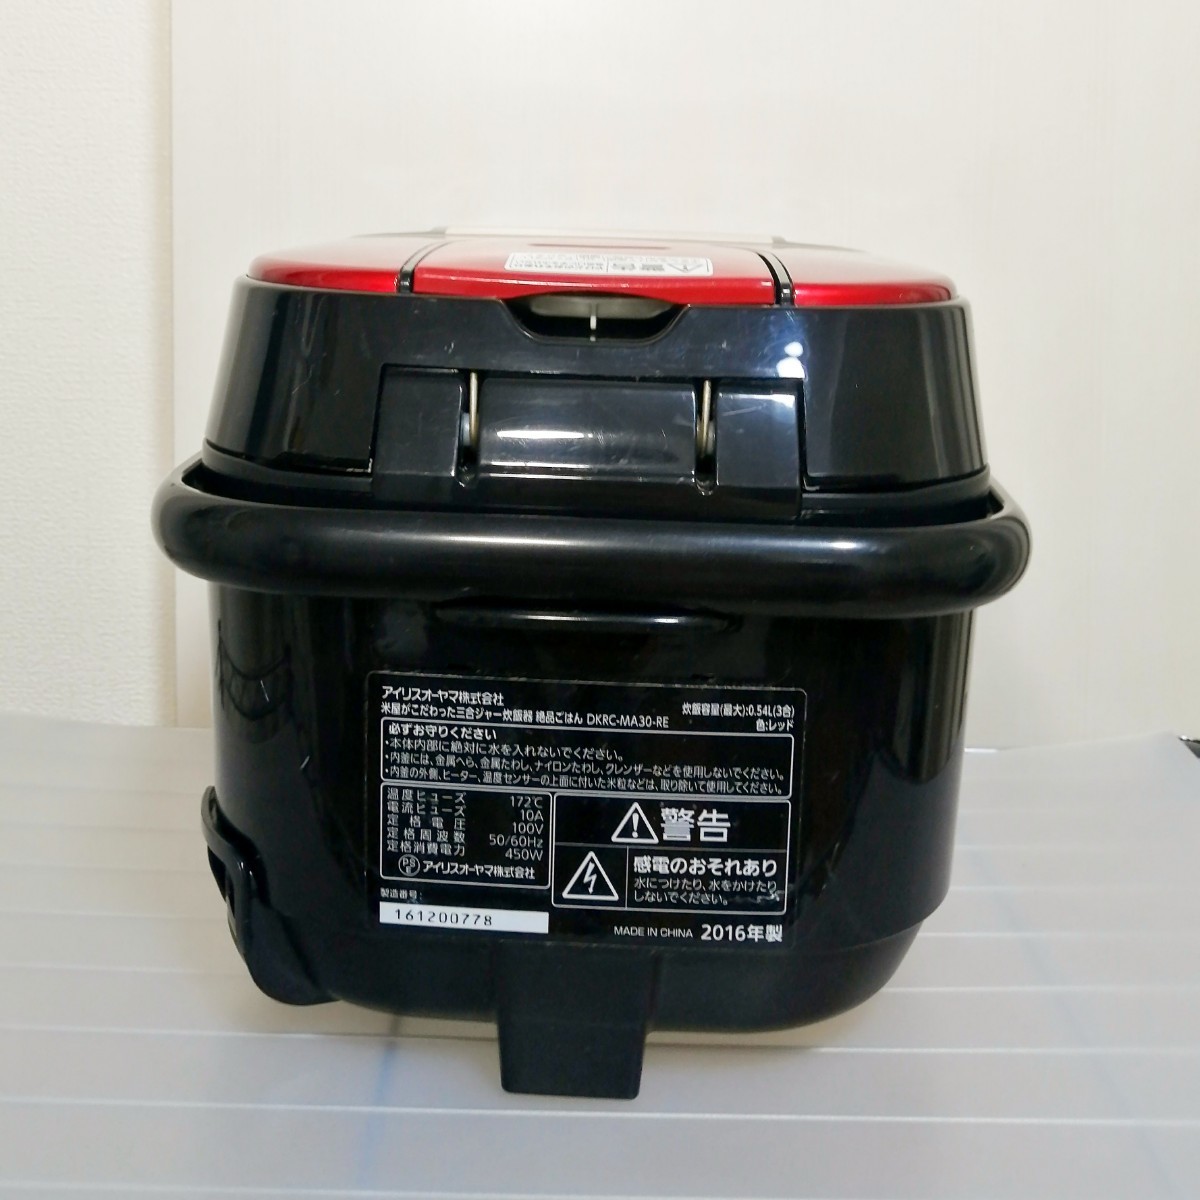 アイリスオーヤマ 炊飯器 3合 DKRC-MA30-RE